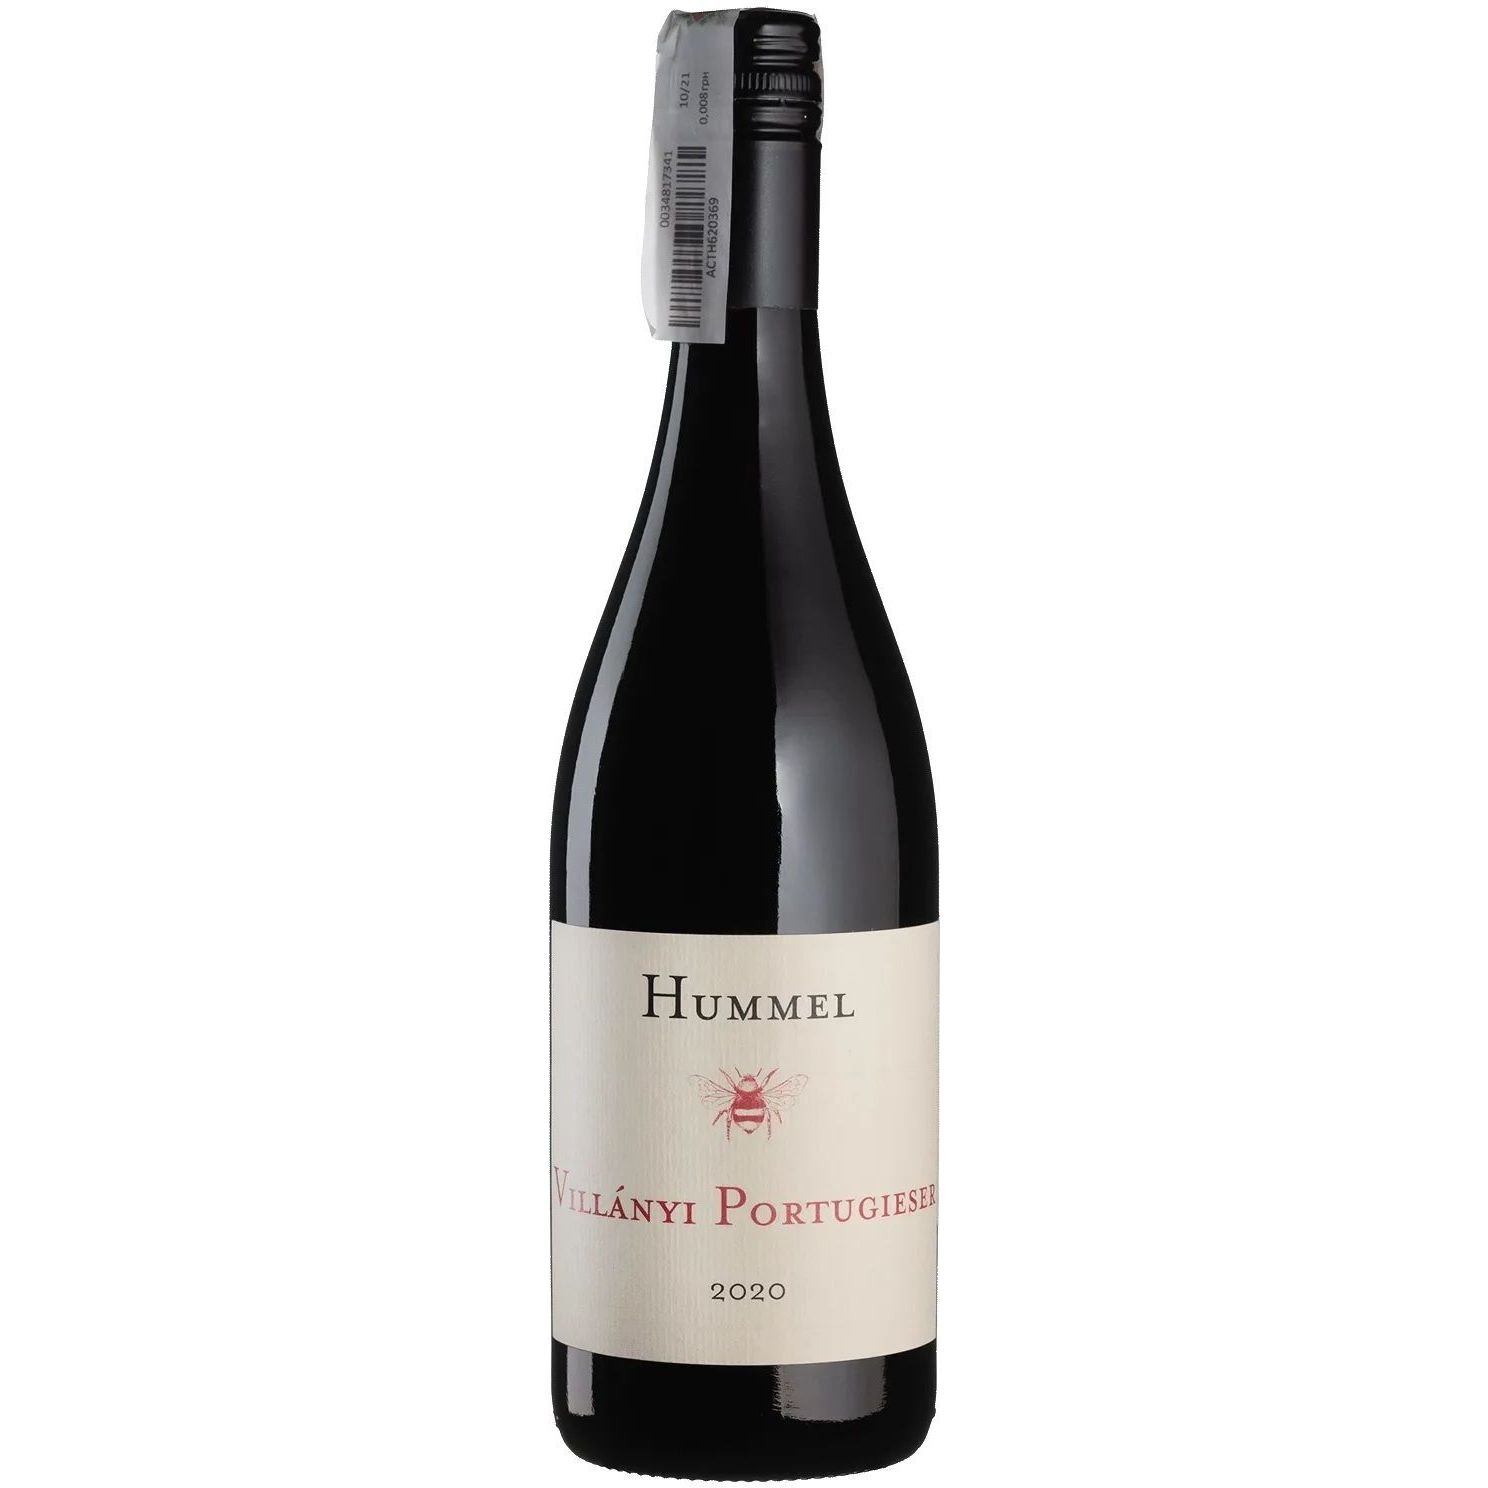 Вино Hummel Villanyi Portugieser 2020 червоне сухе 0.75 л - фото 1